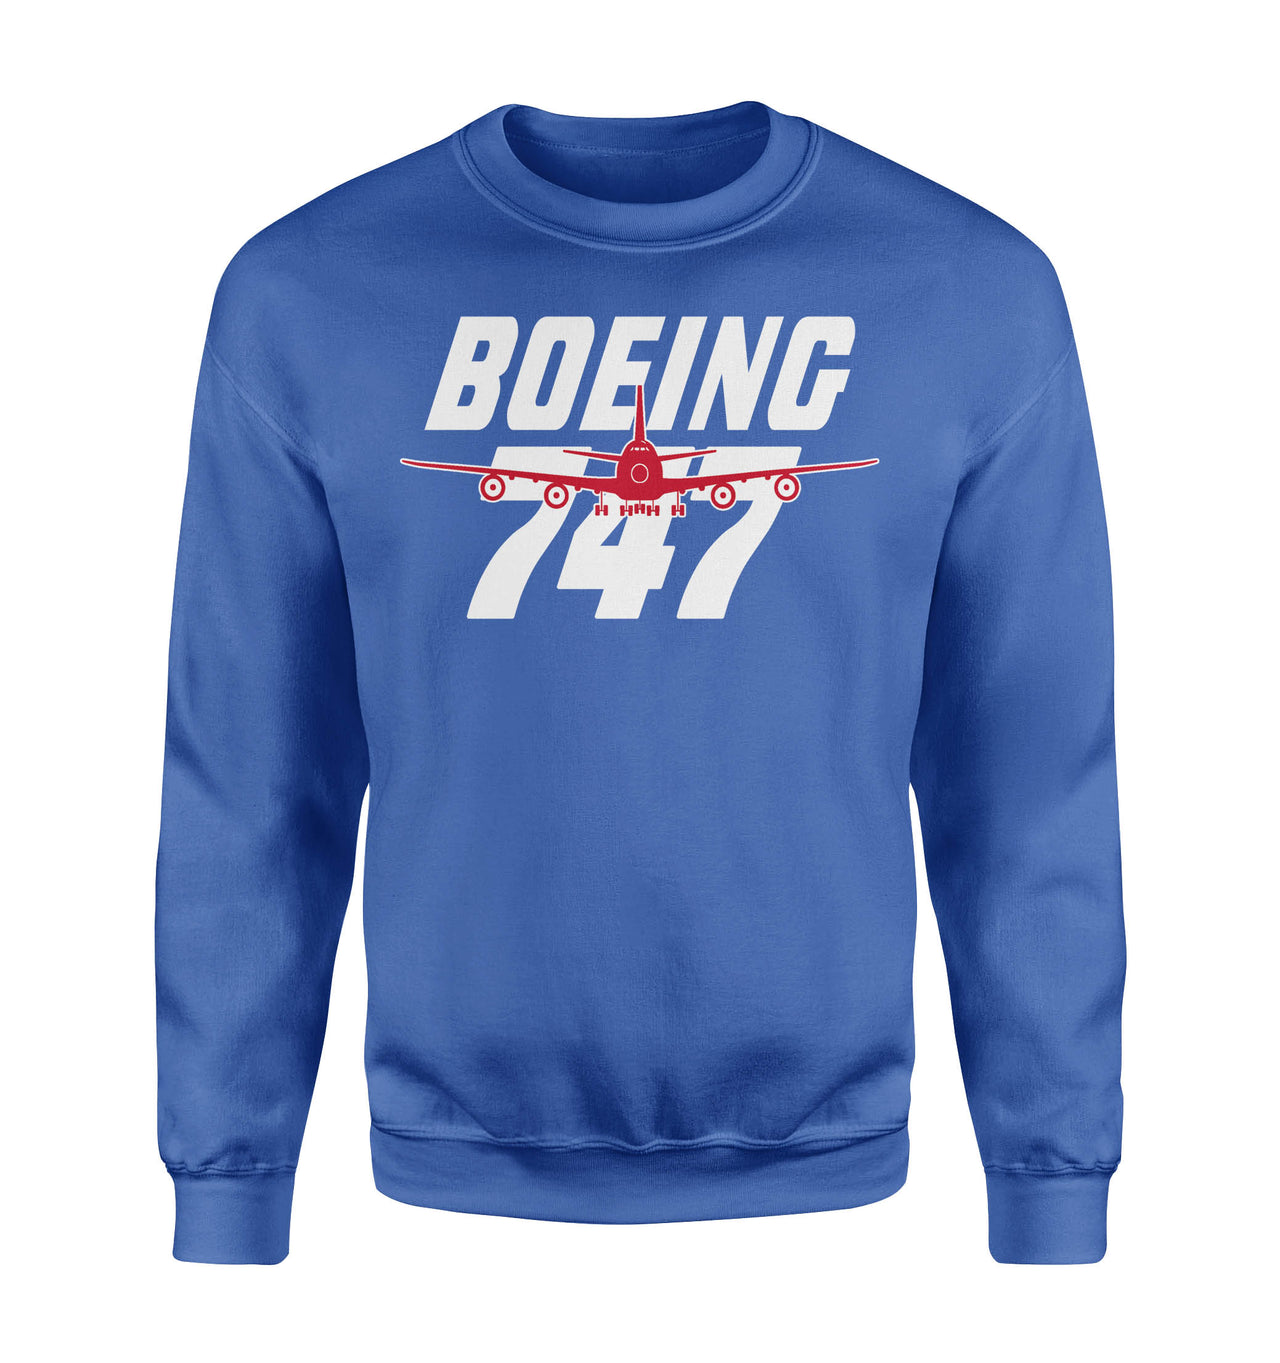 Amazing Boeing 747 Designed Sweatshirts